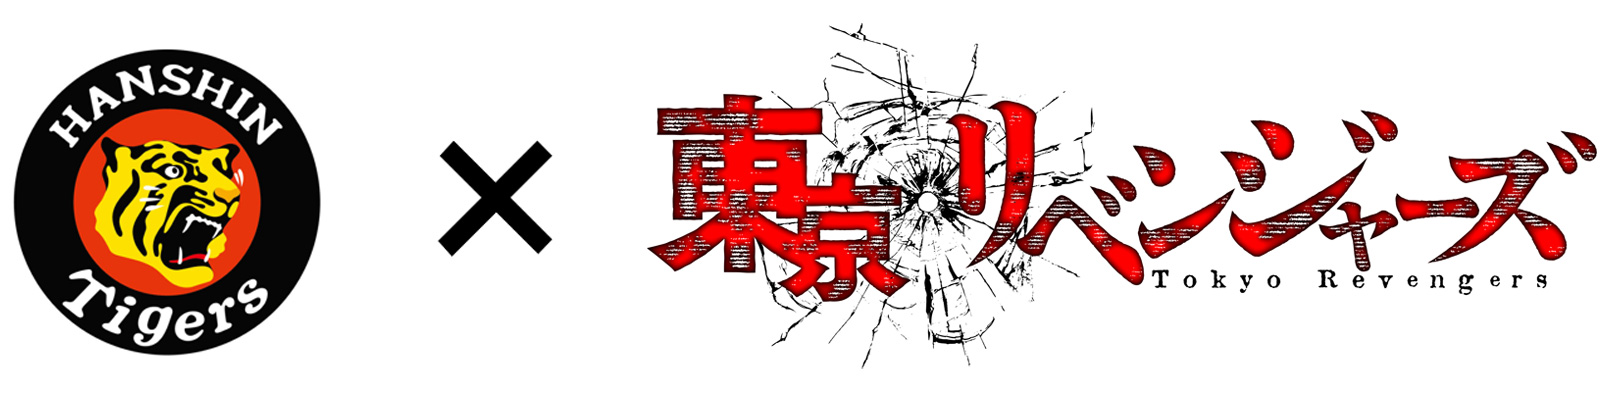 ニュース - イベント - 阪神タイガース×アニメ「東京リベンジャーズ